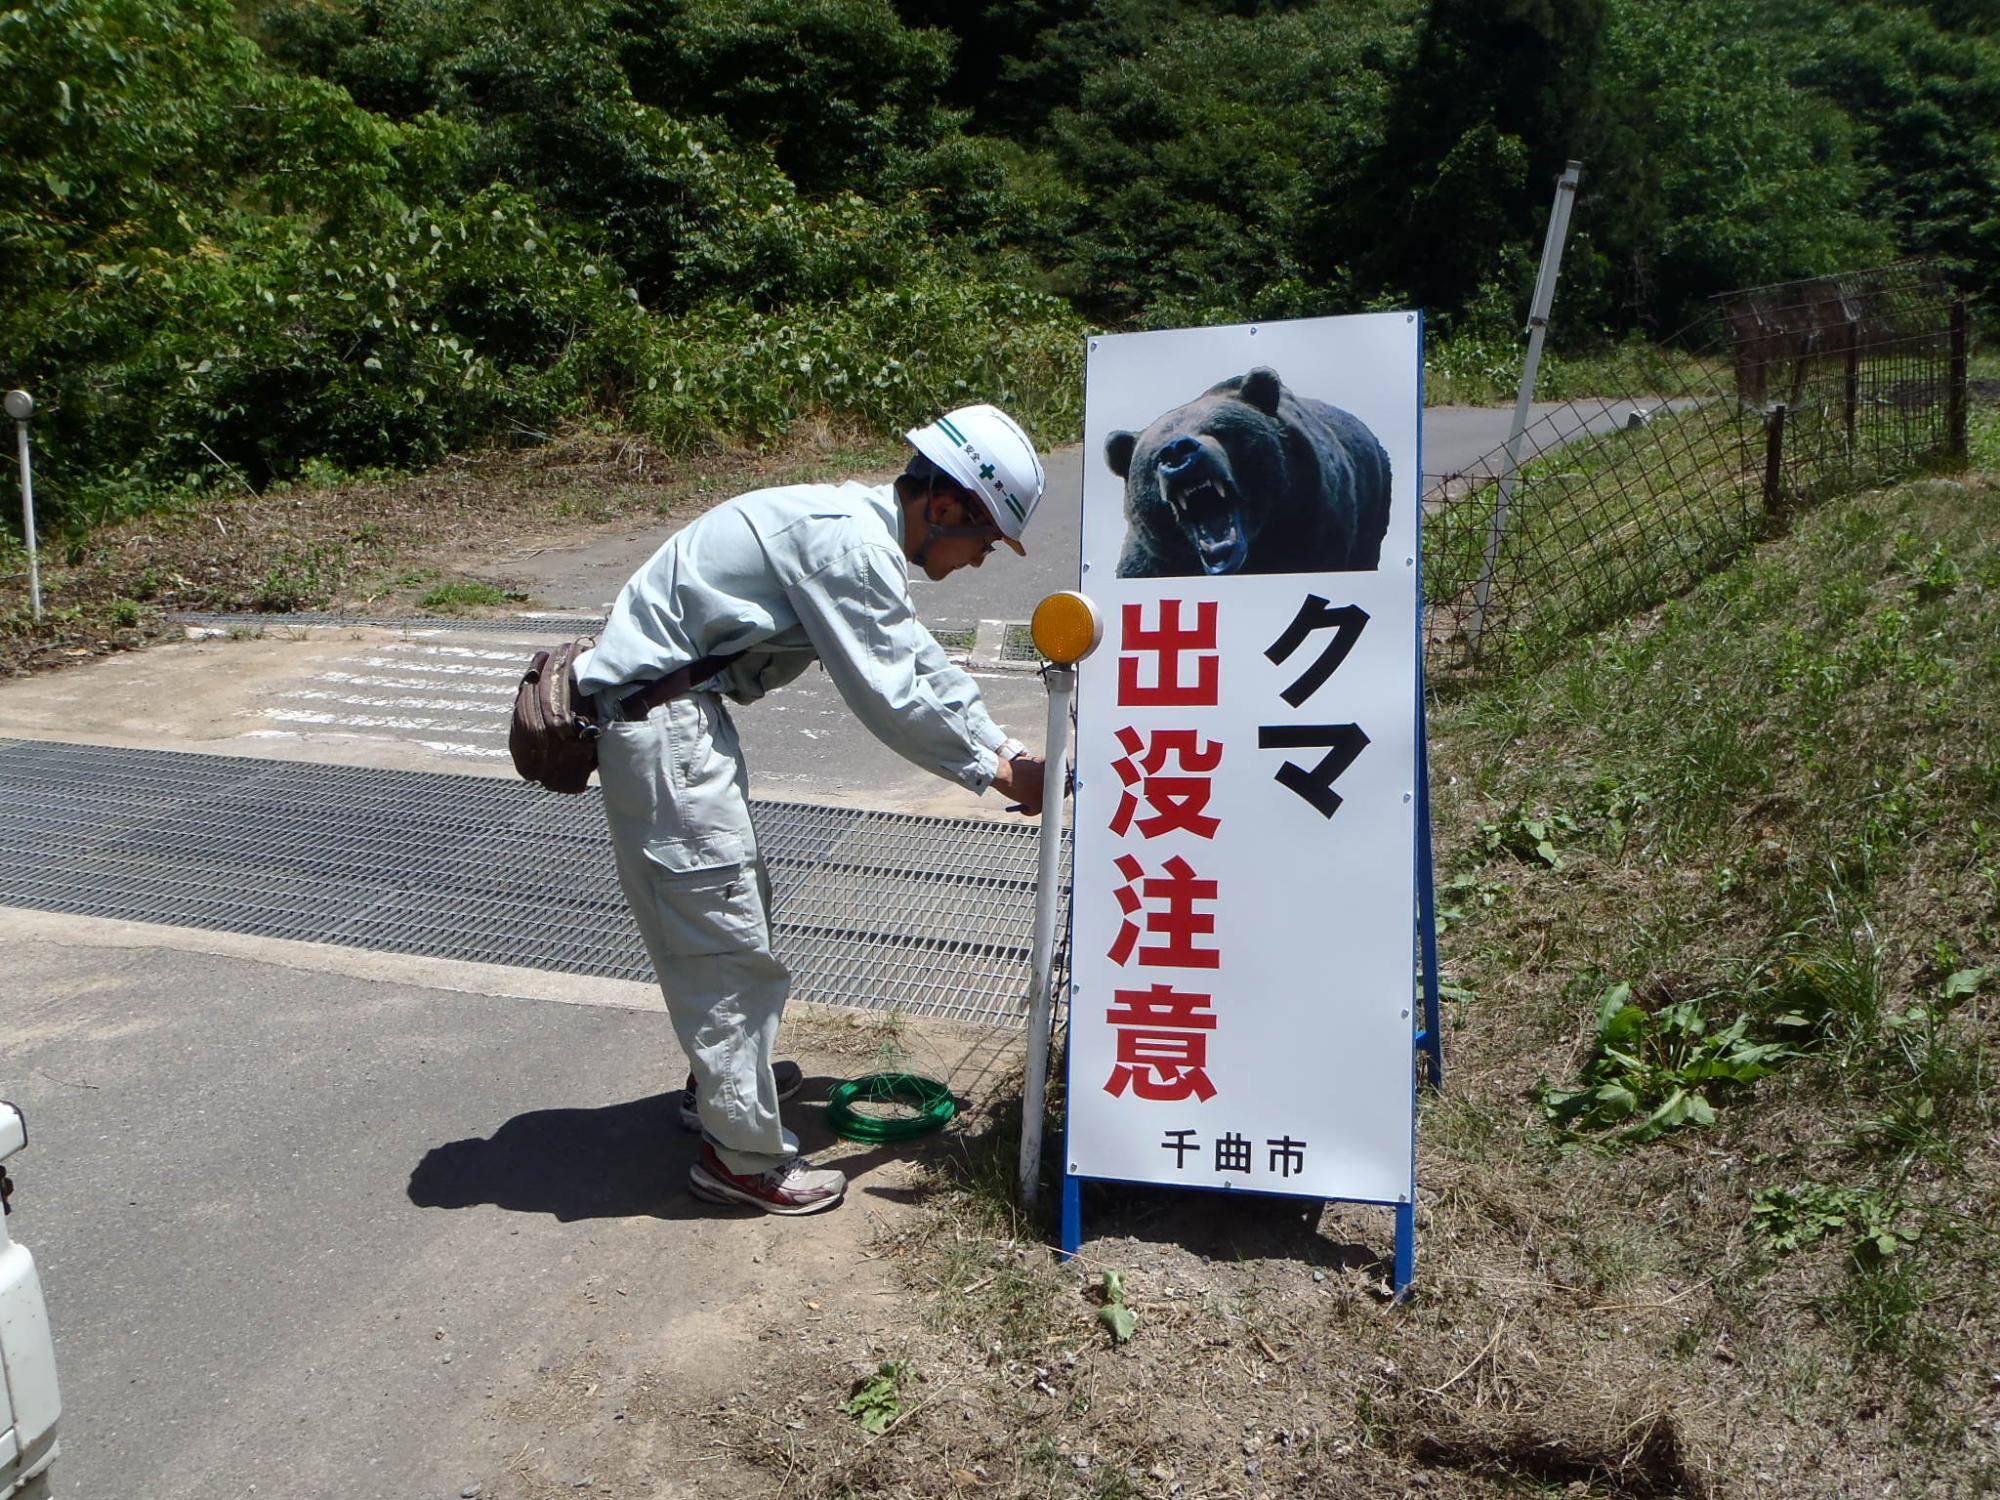 ヘルメットをかぶった作業服姿の男性が、「クマ出没注意」と書かれた看板を設置している写真